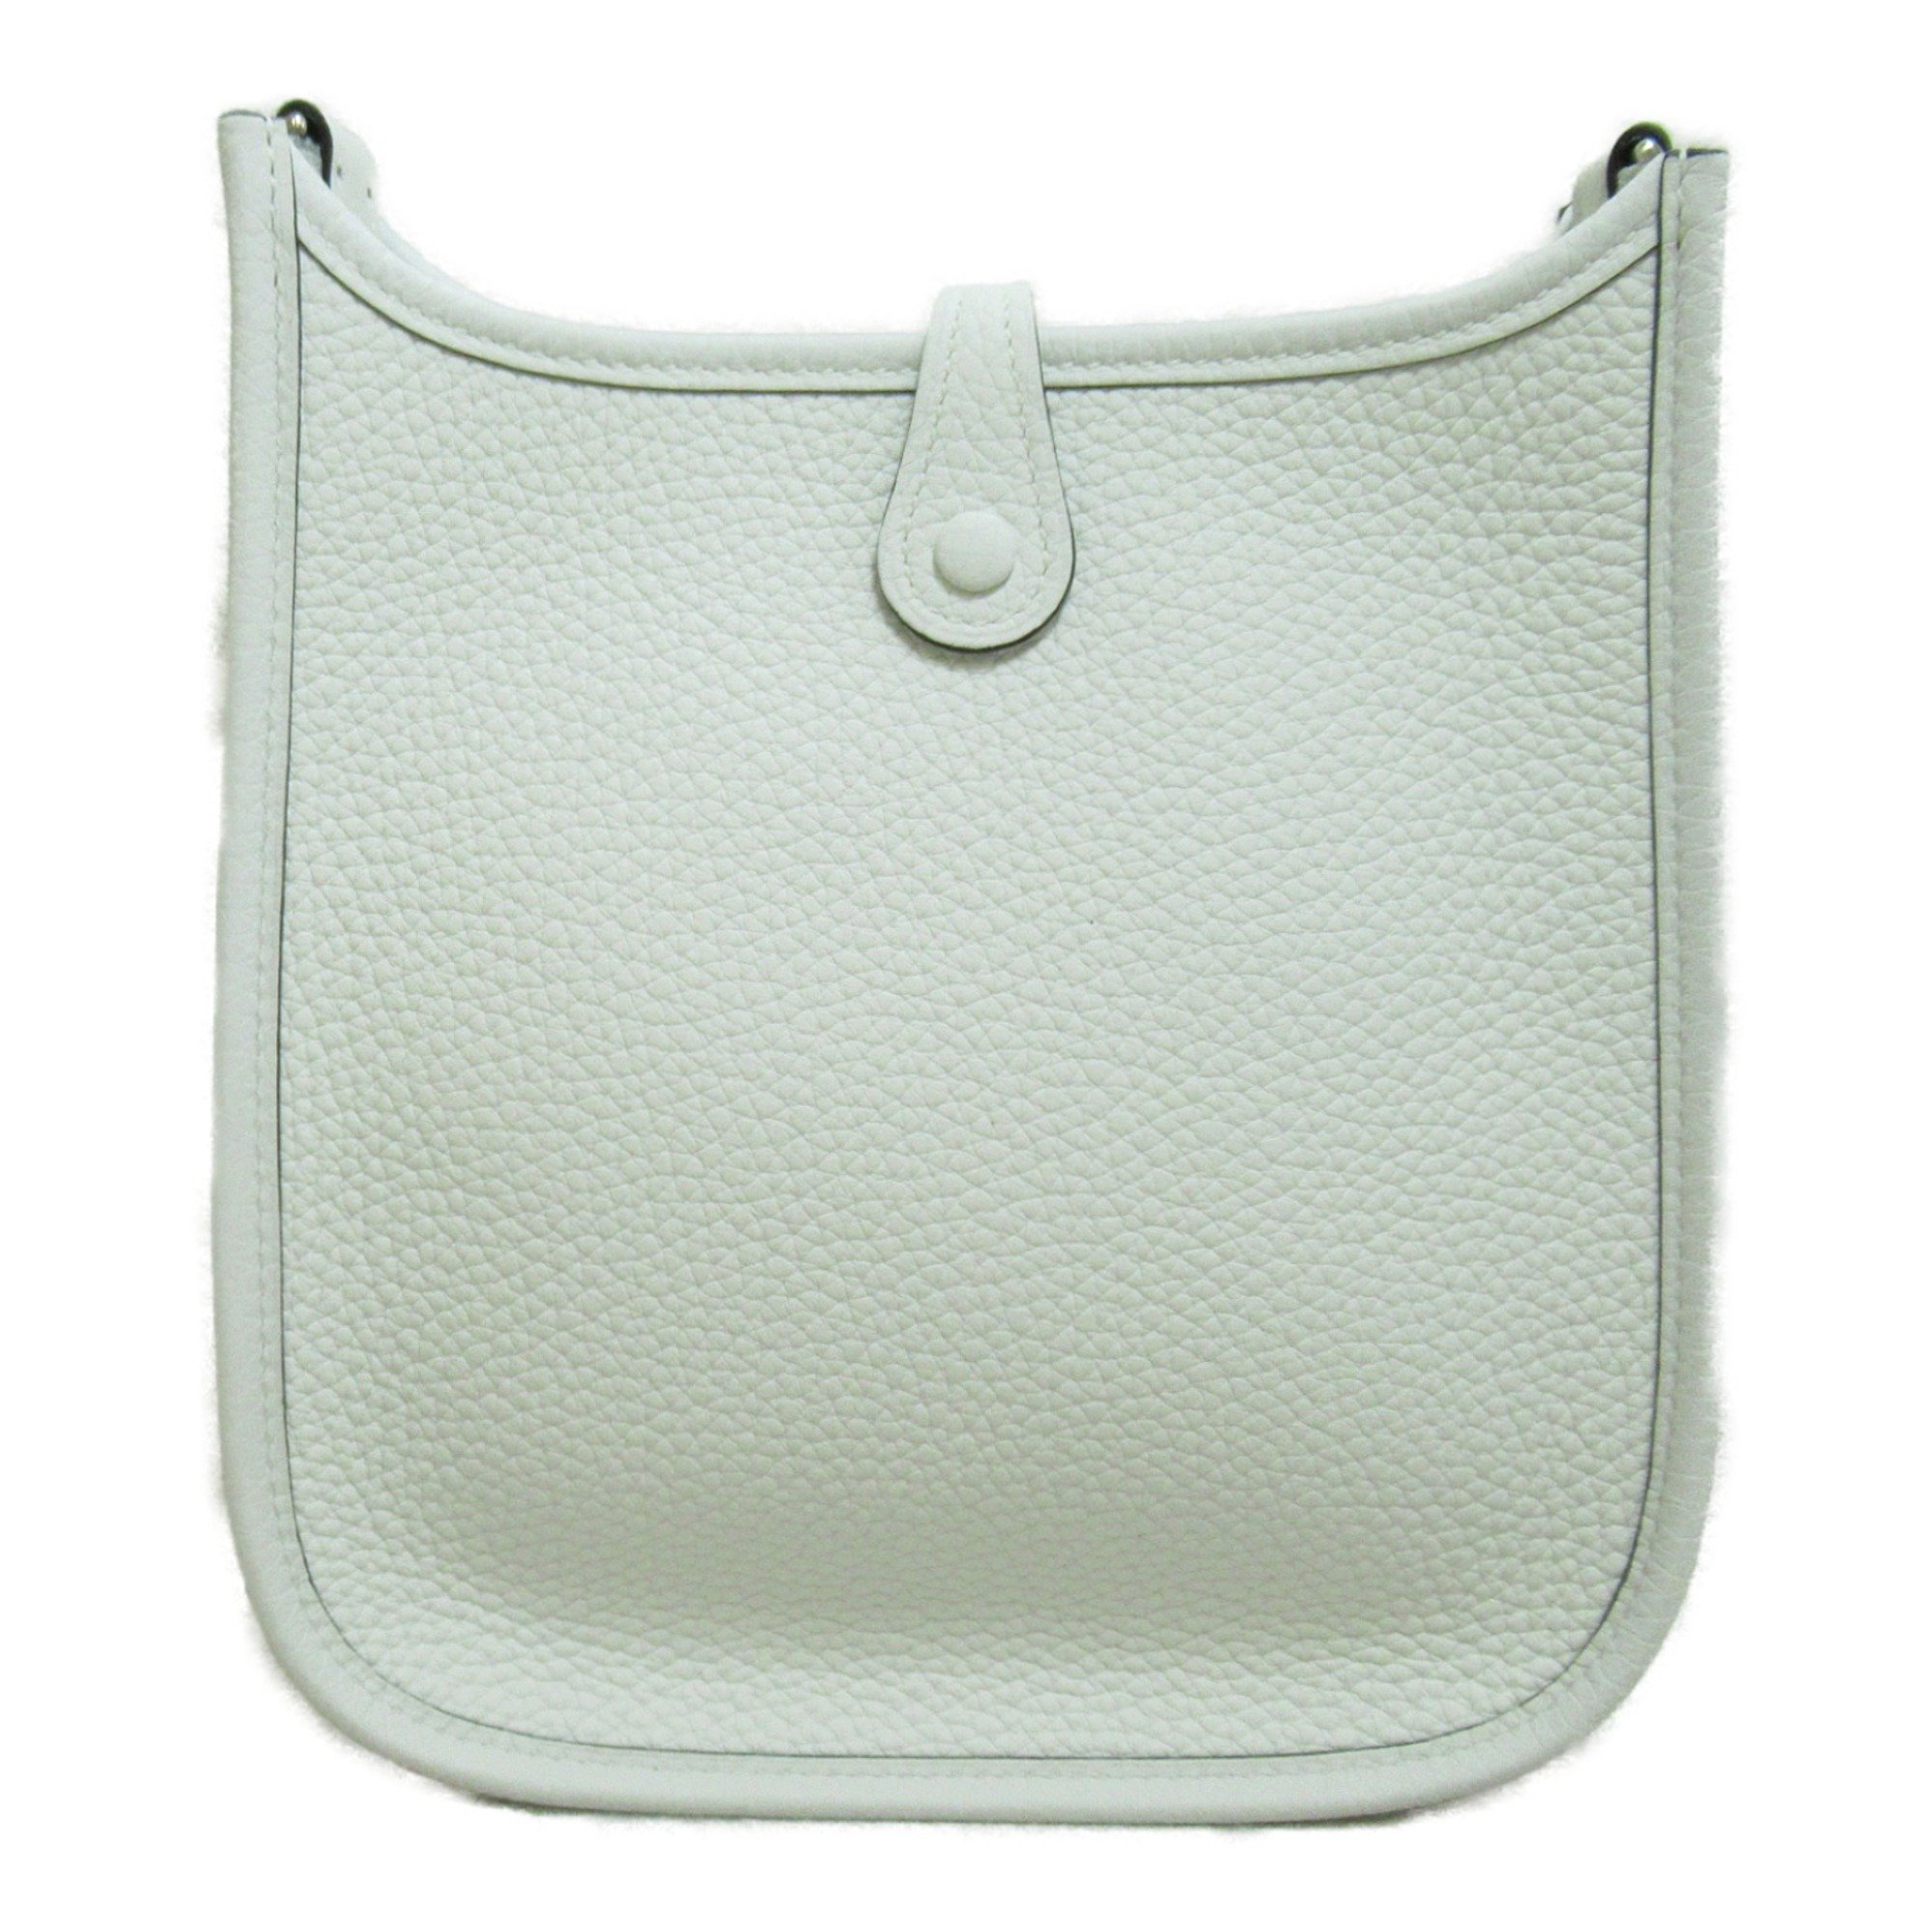 HERMES Evelyn TPM New White Shoulder Bag White New White Taurillon Clemence leather